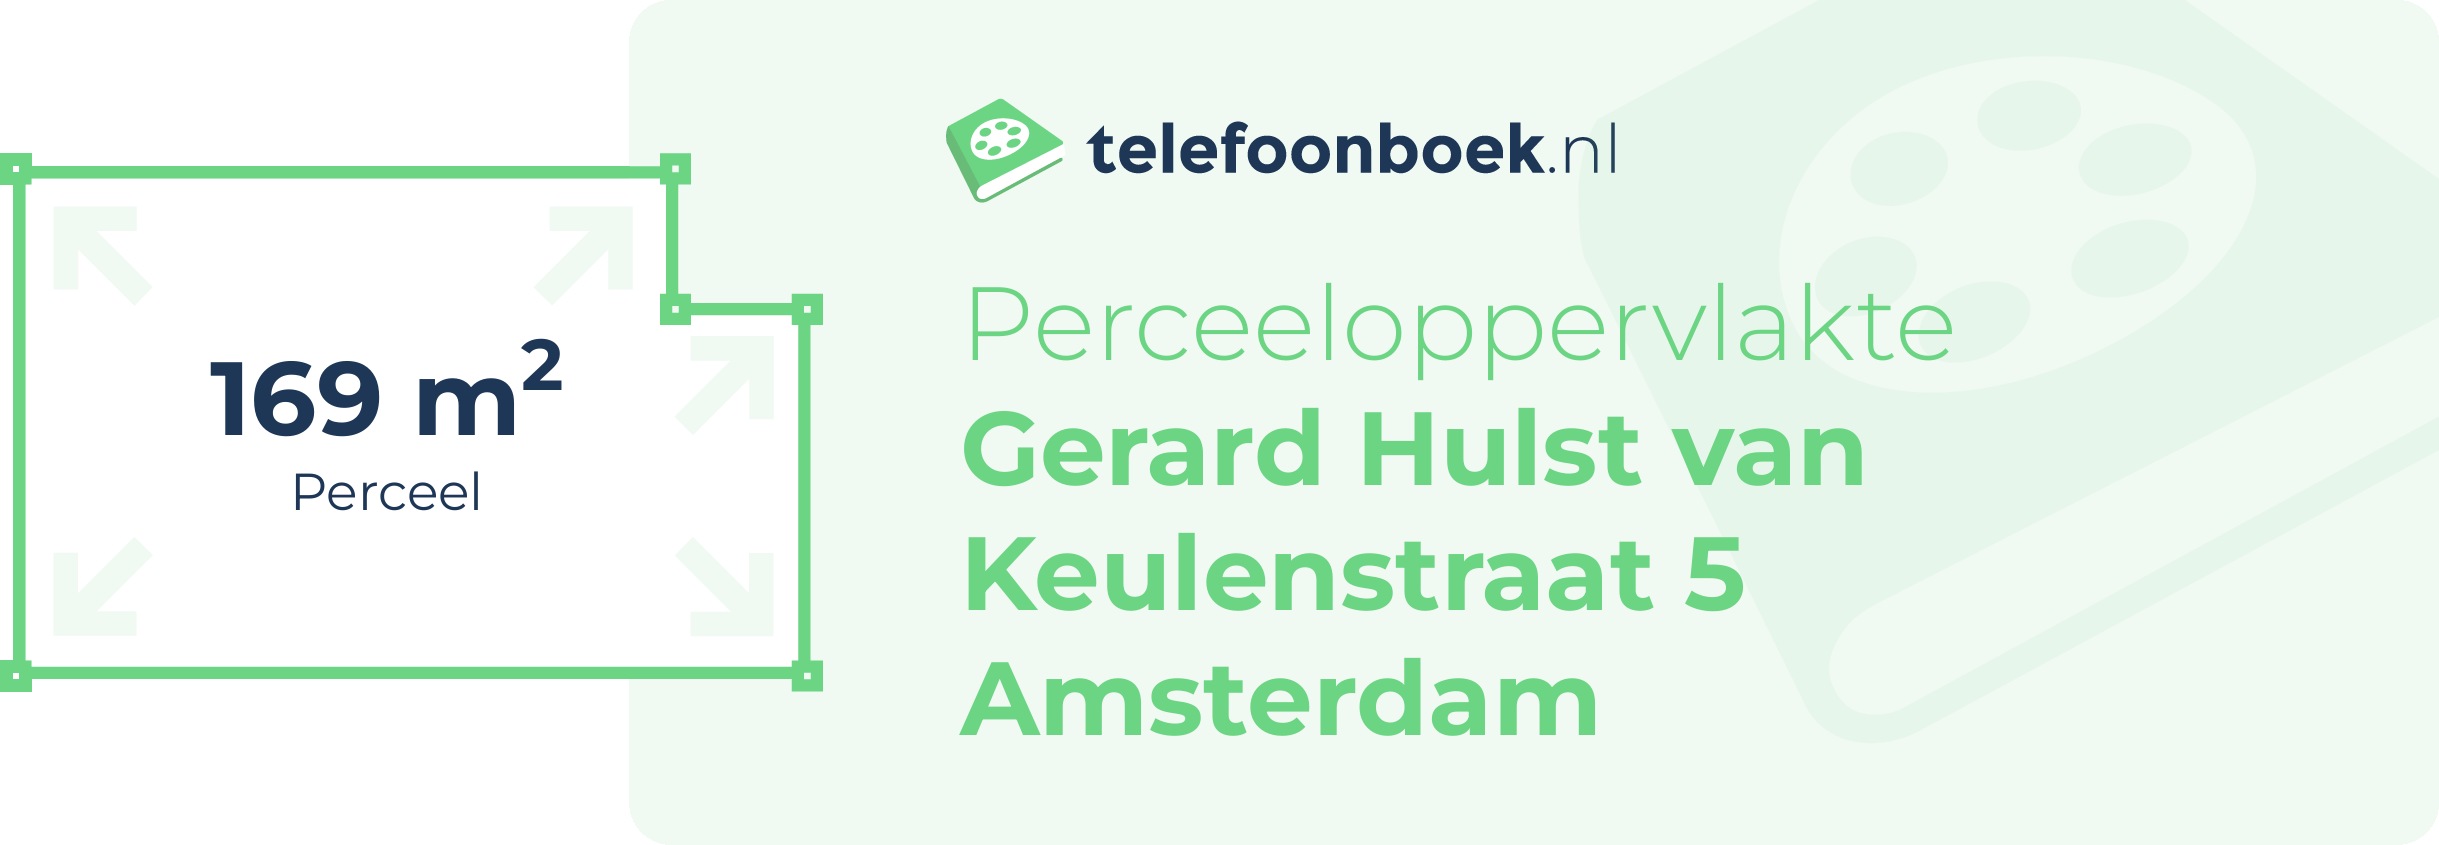 Perceeloppervlakte Gerard Hulst Van Keulenstraat 5 Amsterdam